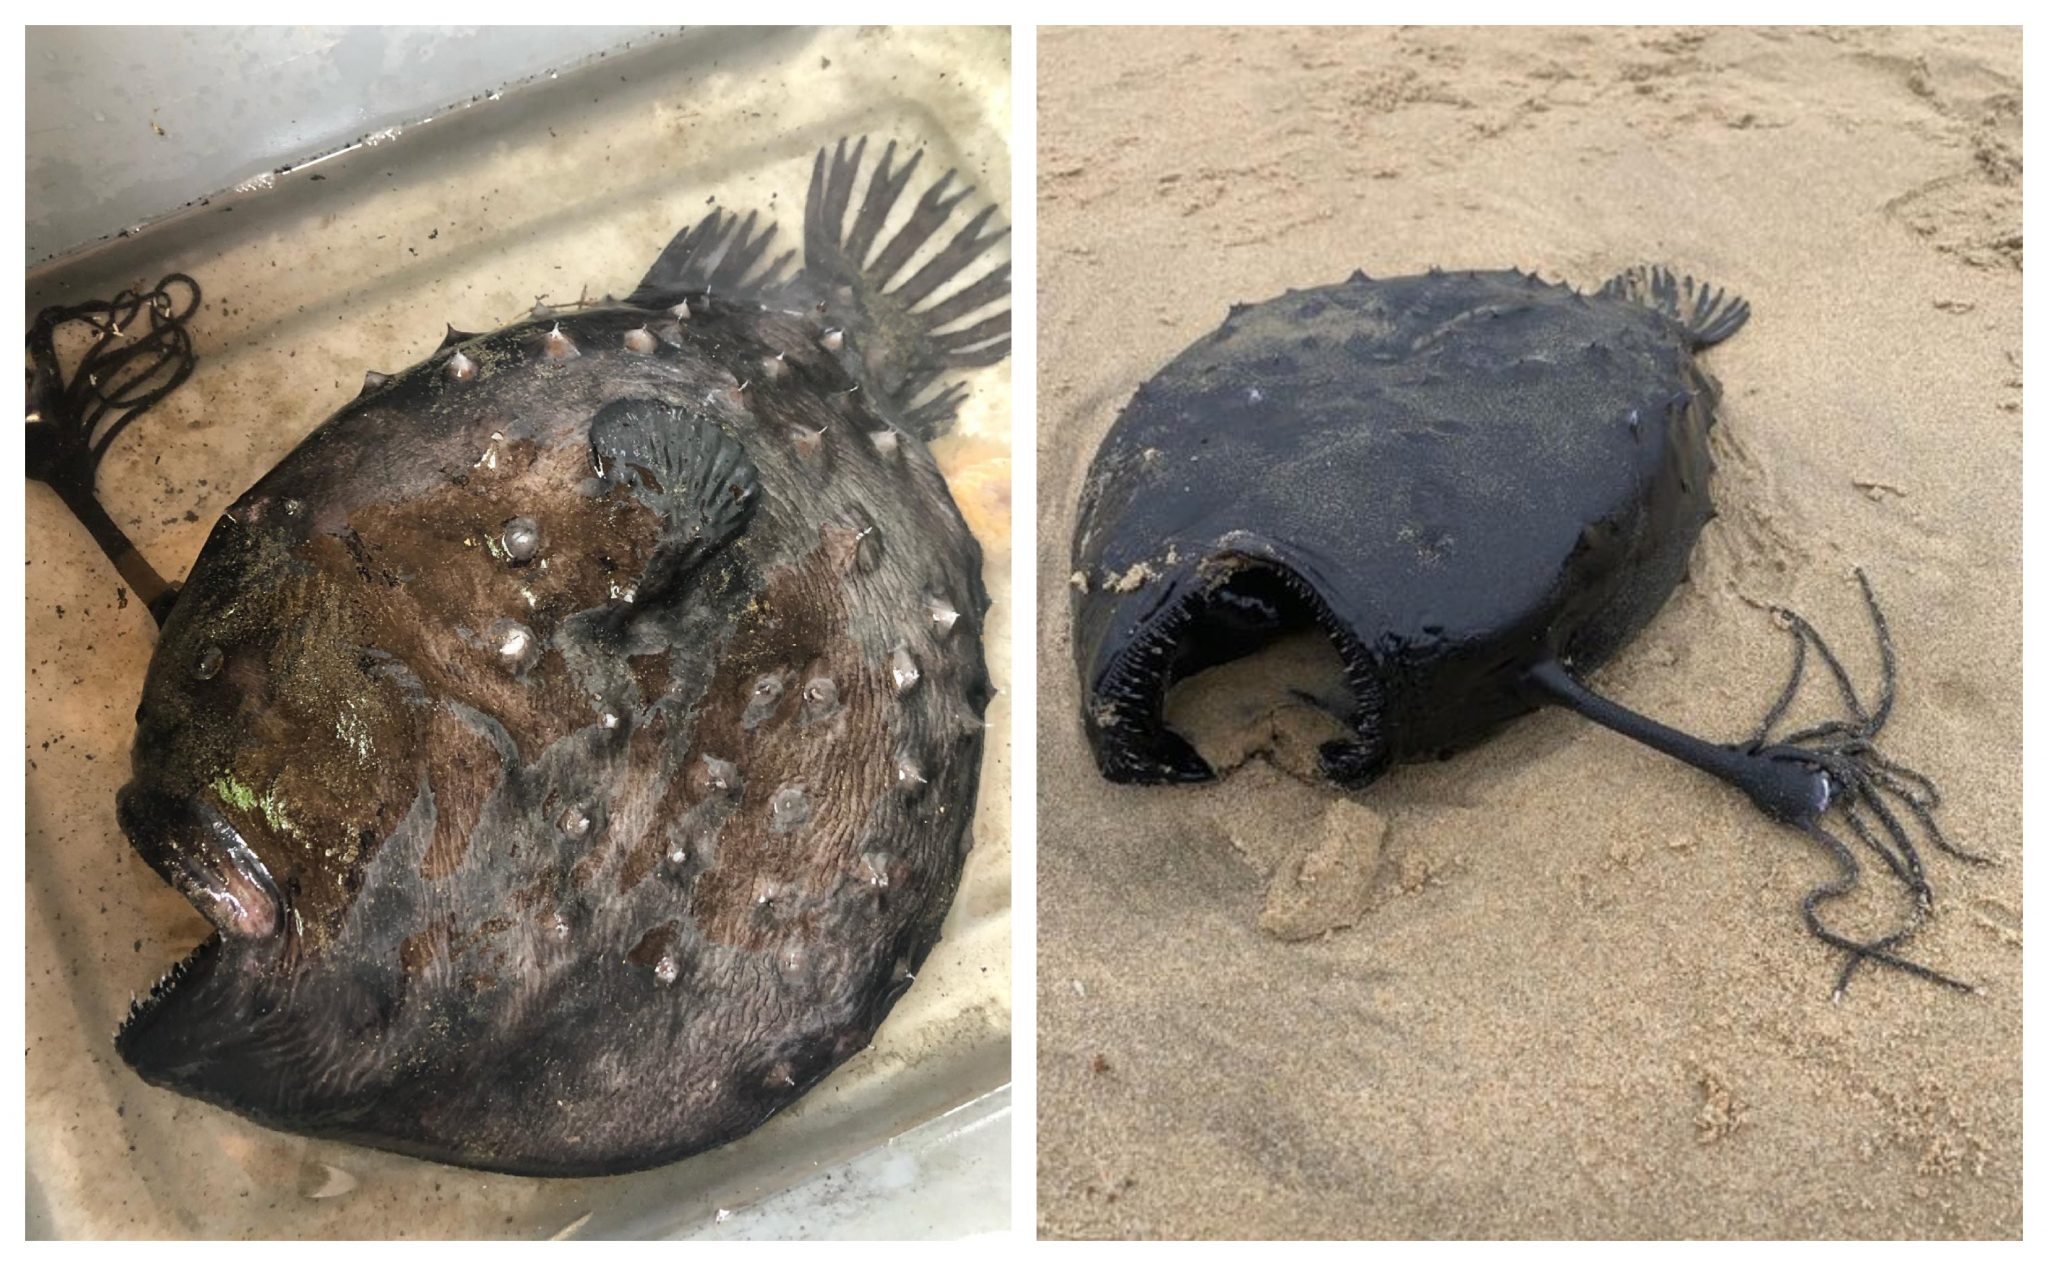 O peixe foi encontrado na Newport Beach e o espécime foi recuperado intacto.